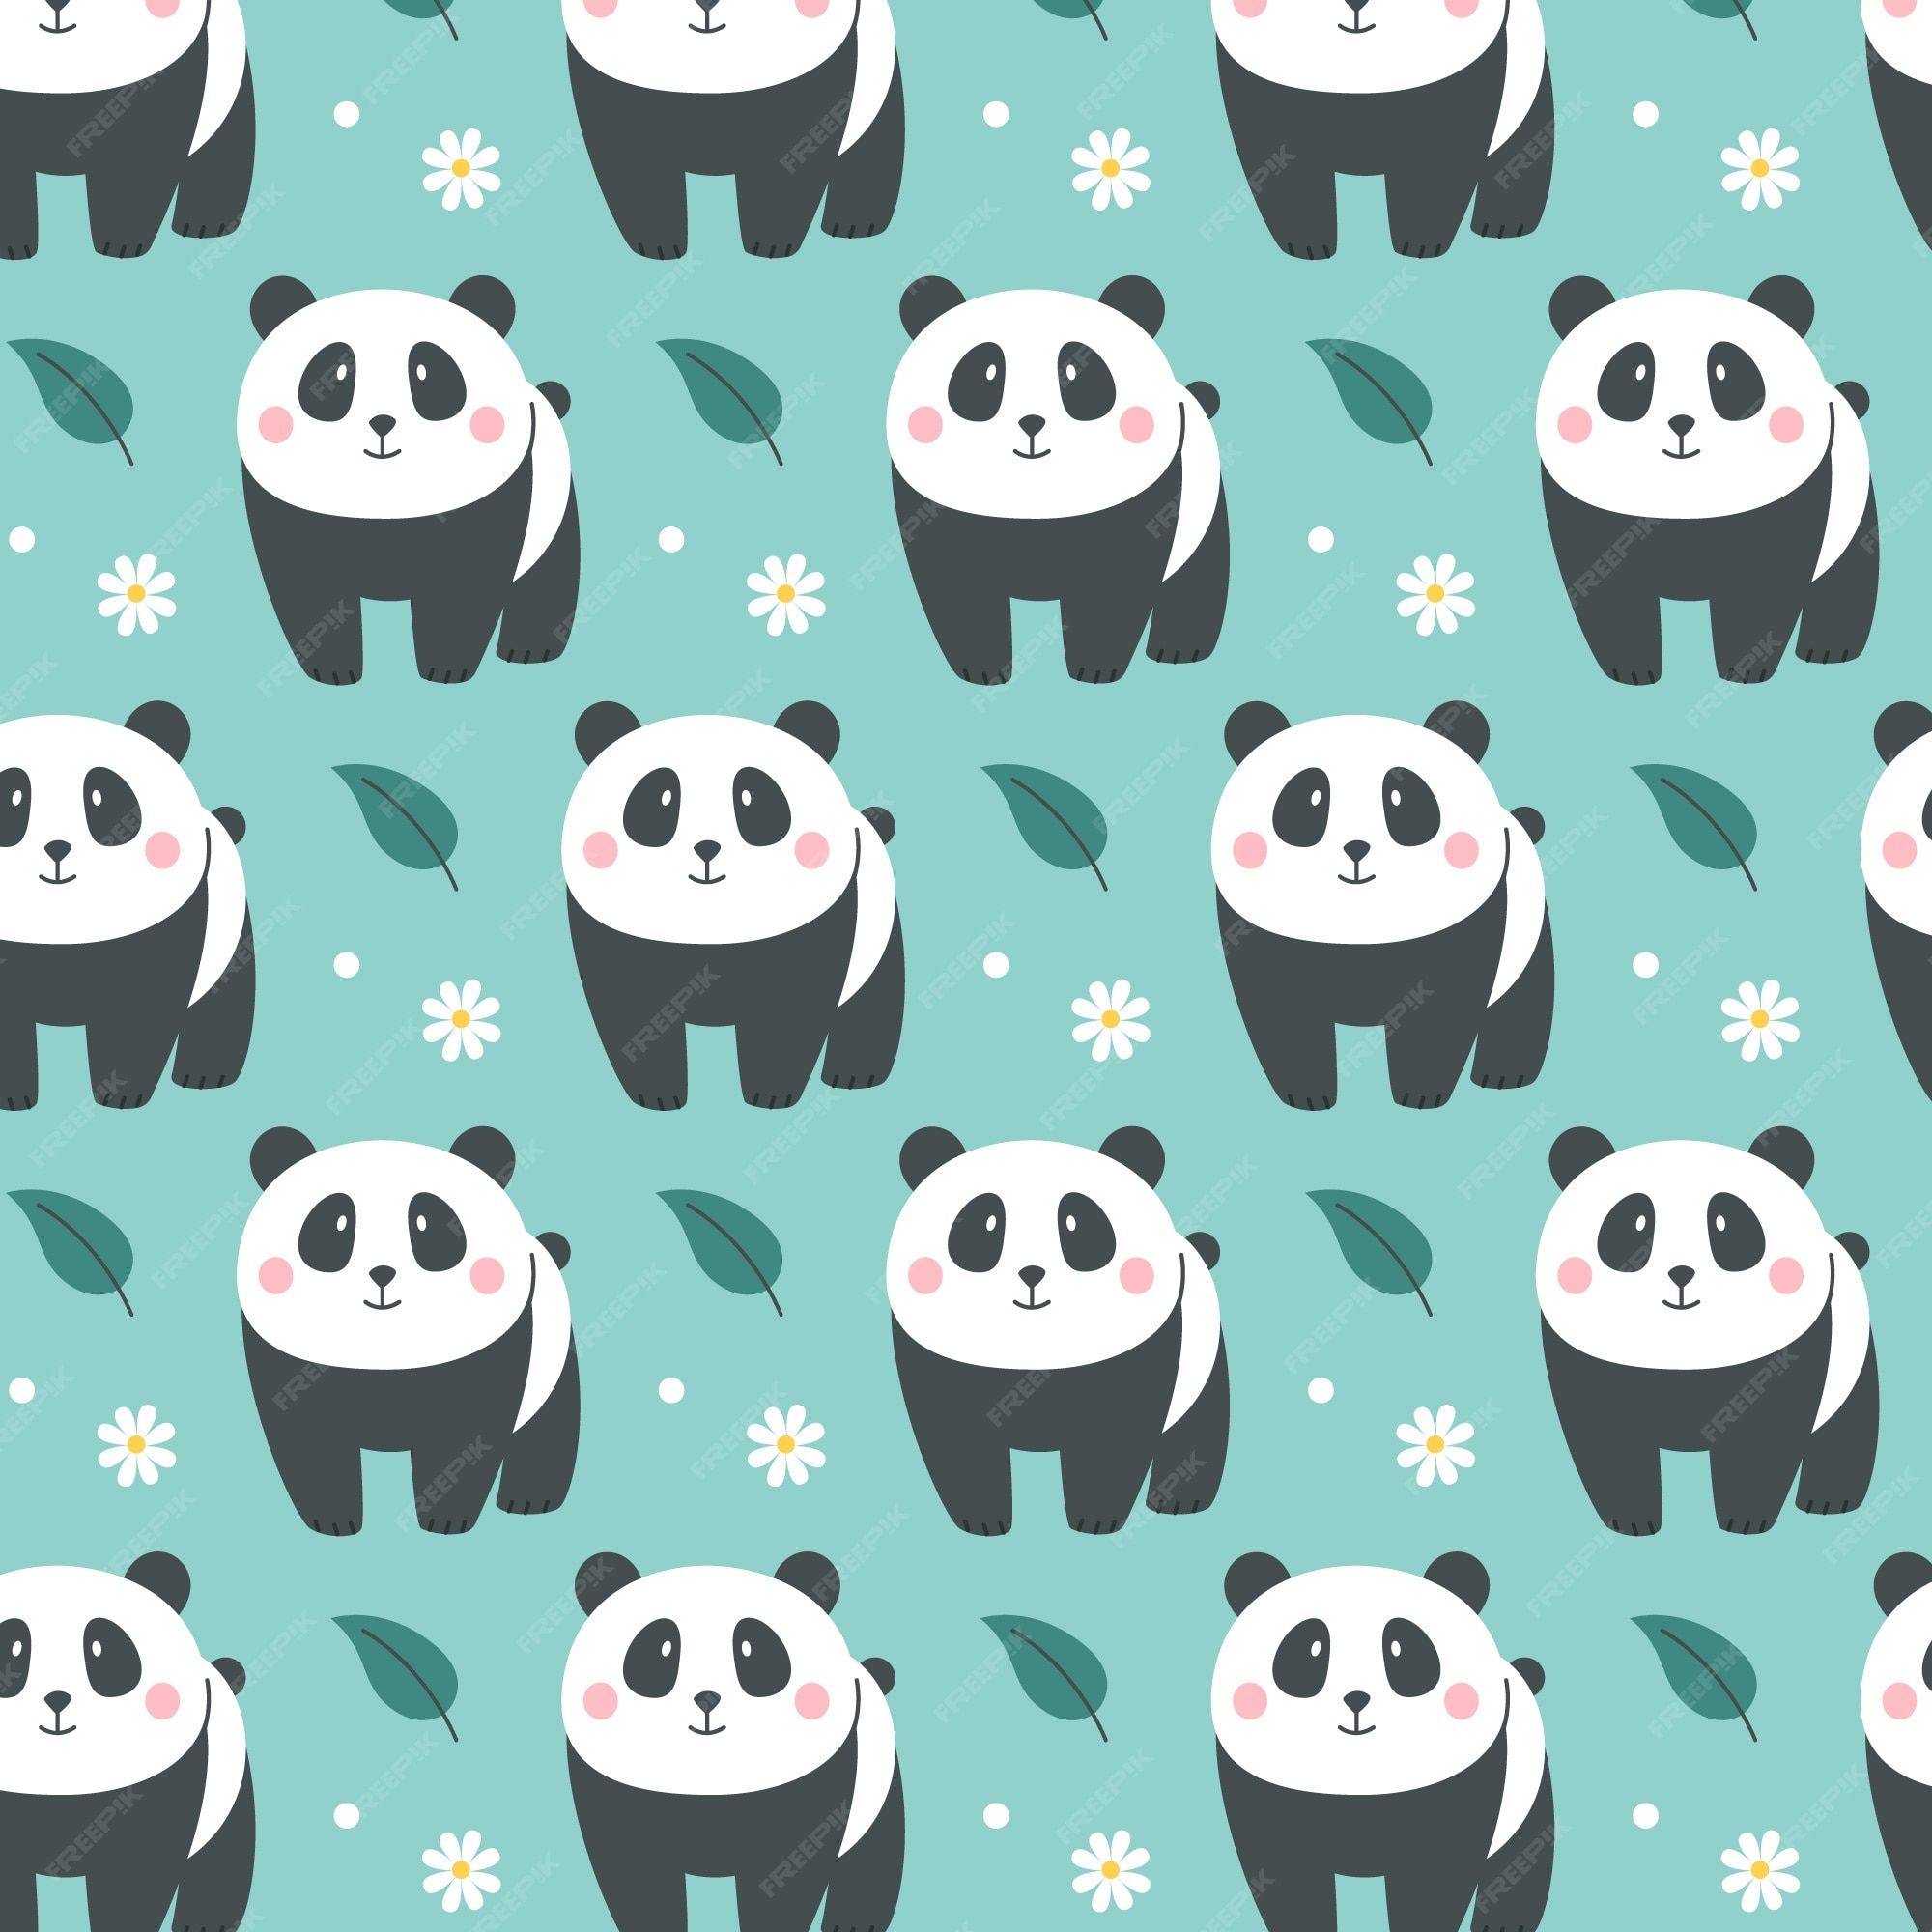 Seamless pattern with cute pandas on a blue background - Panda